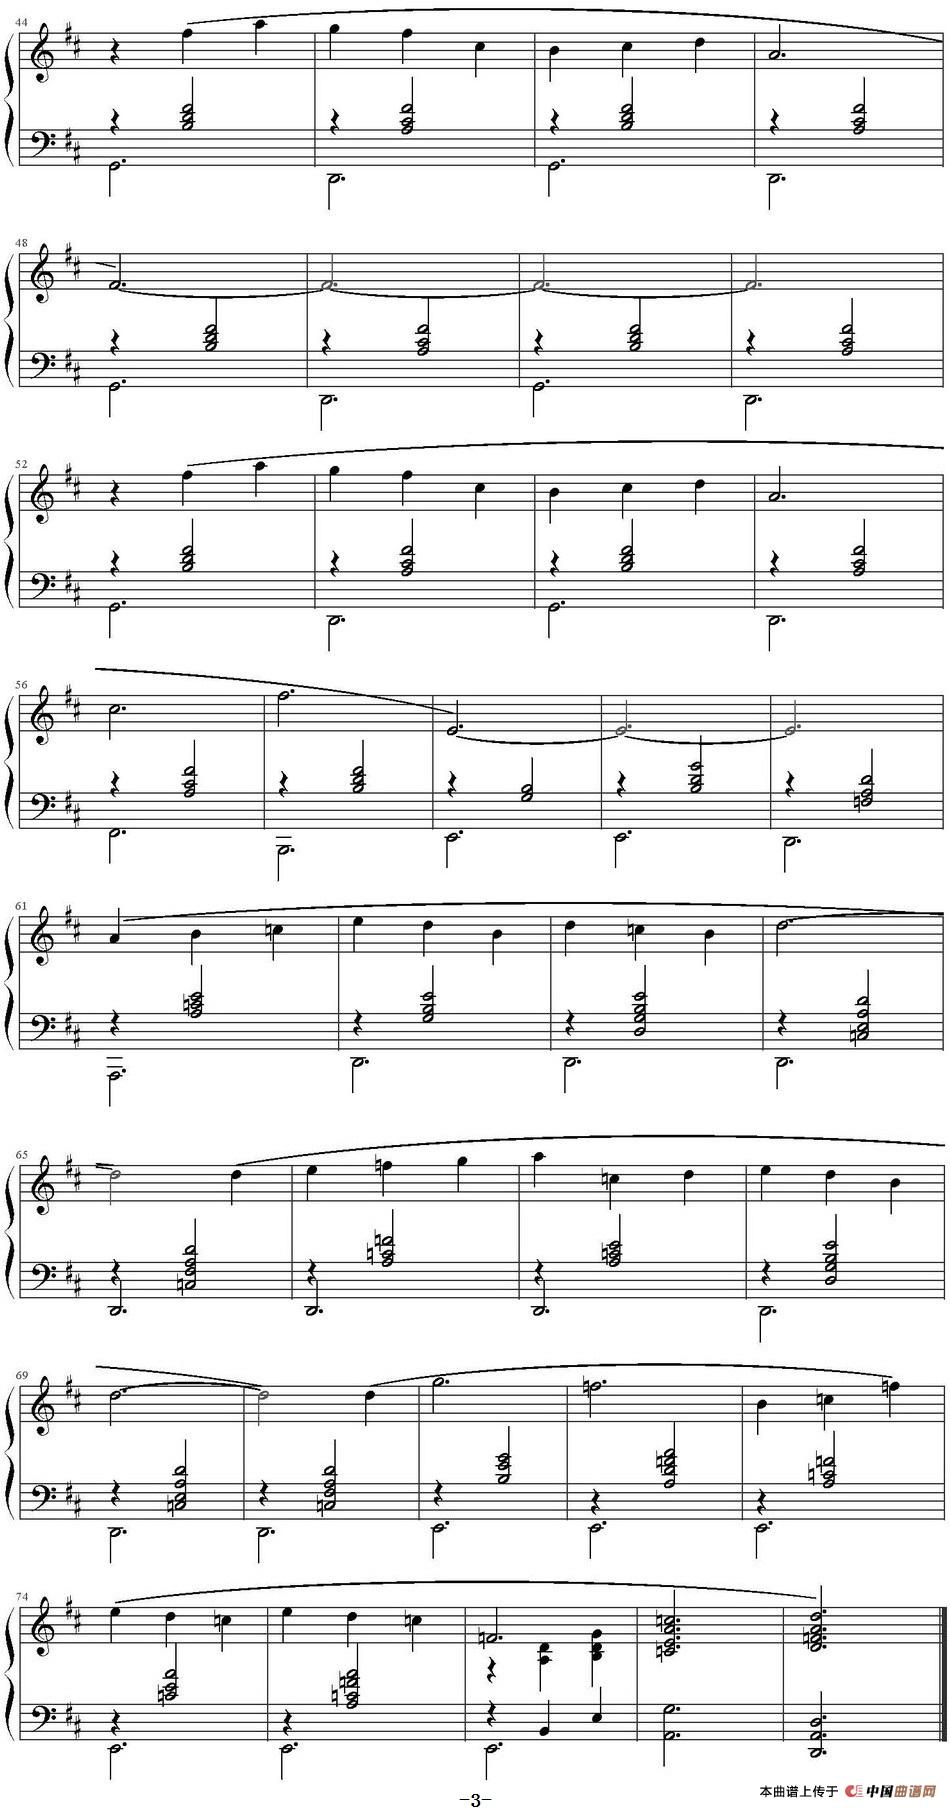 《萨蒂《裸者之舞》第一首》钢琴曲谱图分享